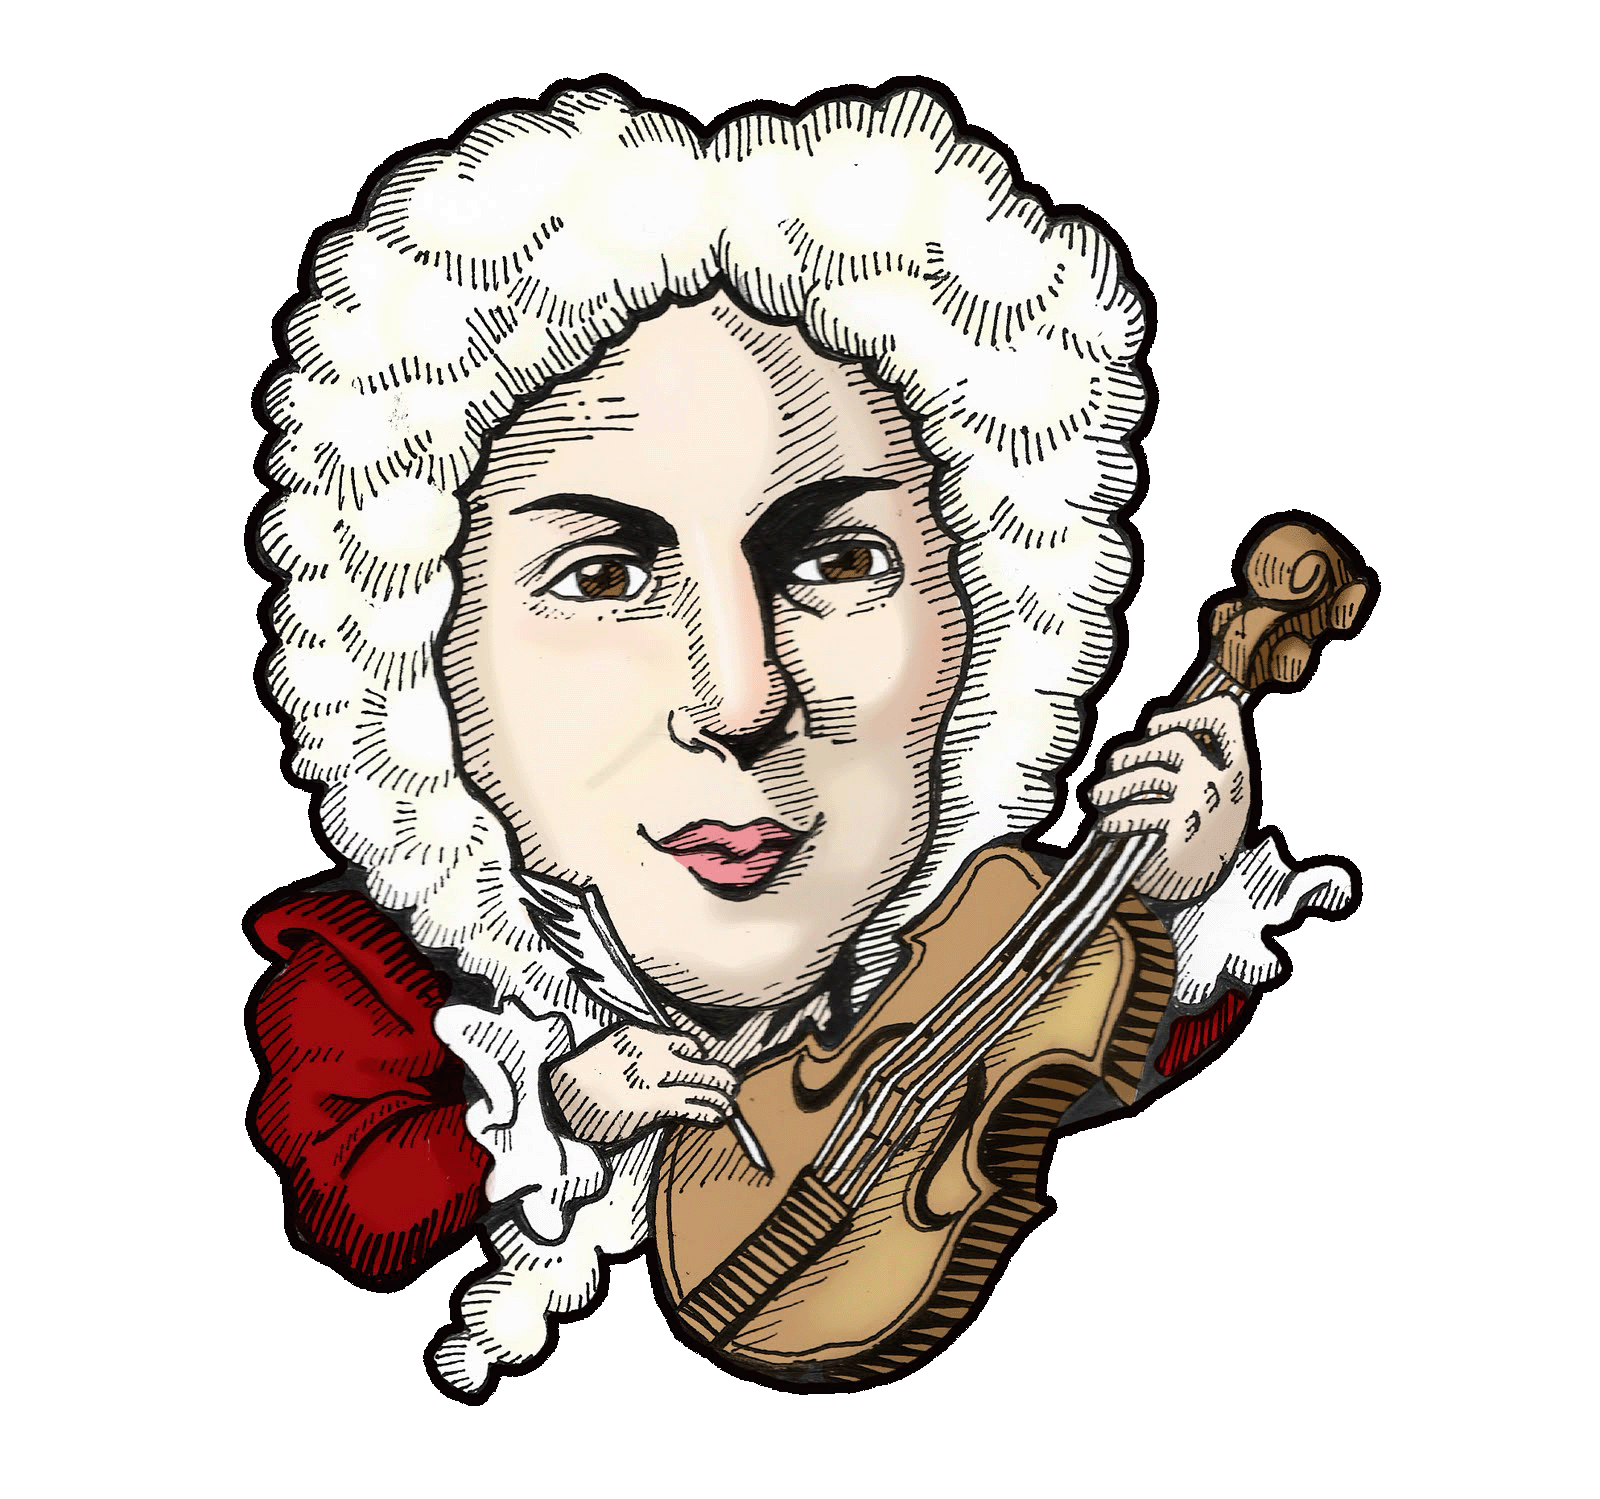 Вивальди страна. Композитор Антонио Вивальди. Анто́нио Лючио Вива́льди. Вивальди портрет композитора. Антонио Вивальди портрет.